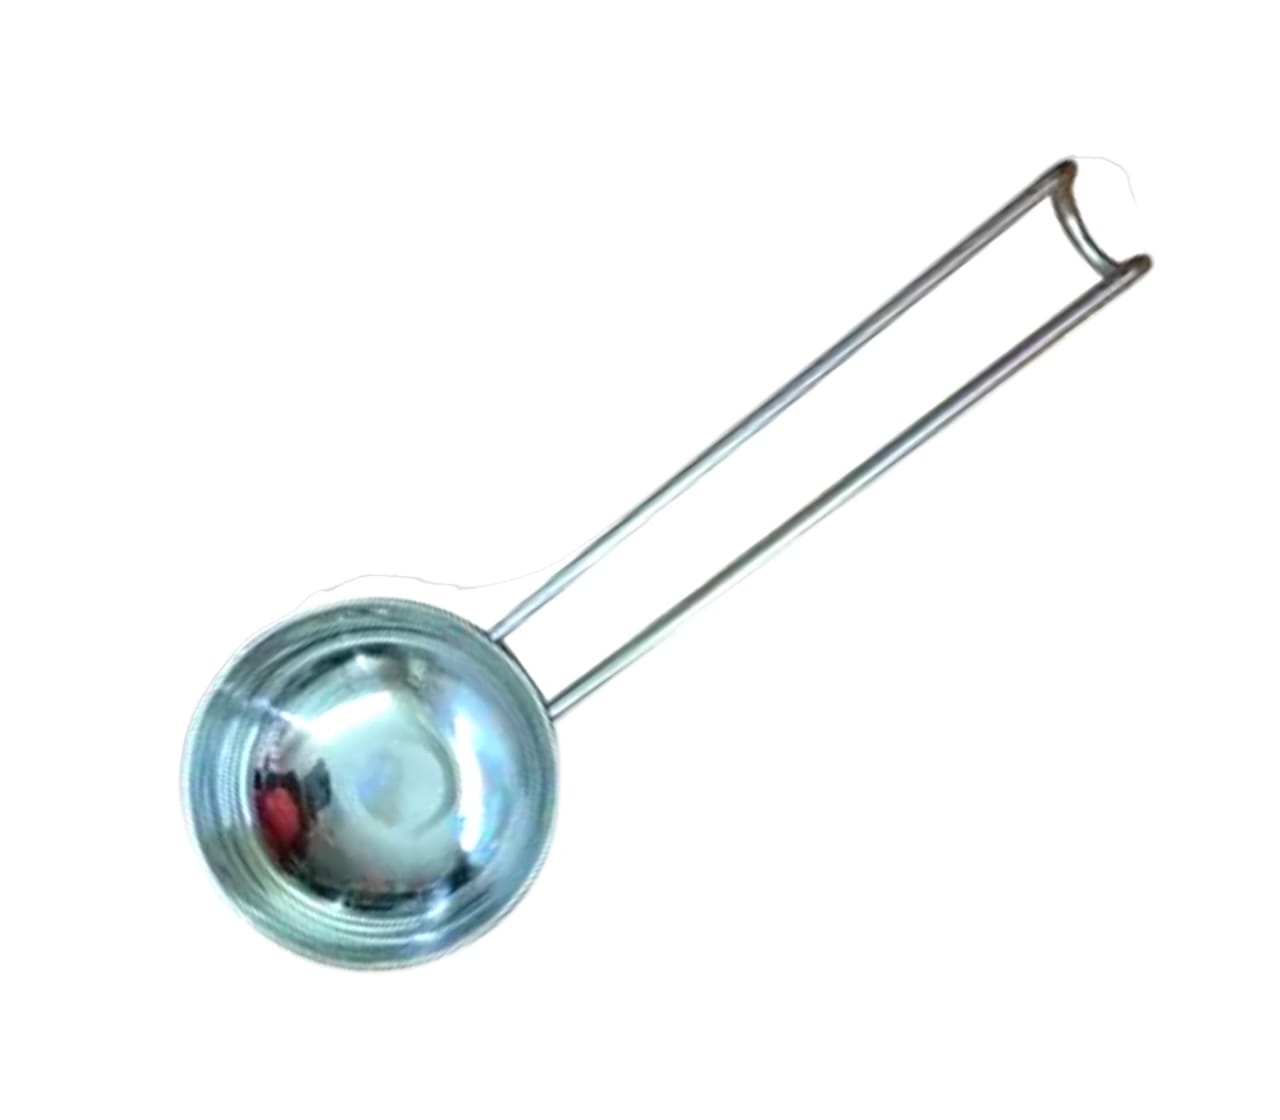 Stainless Steel Ladle Spoon